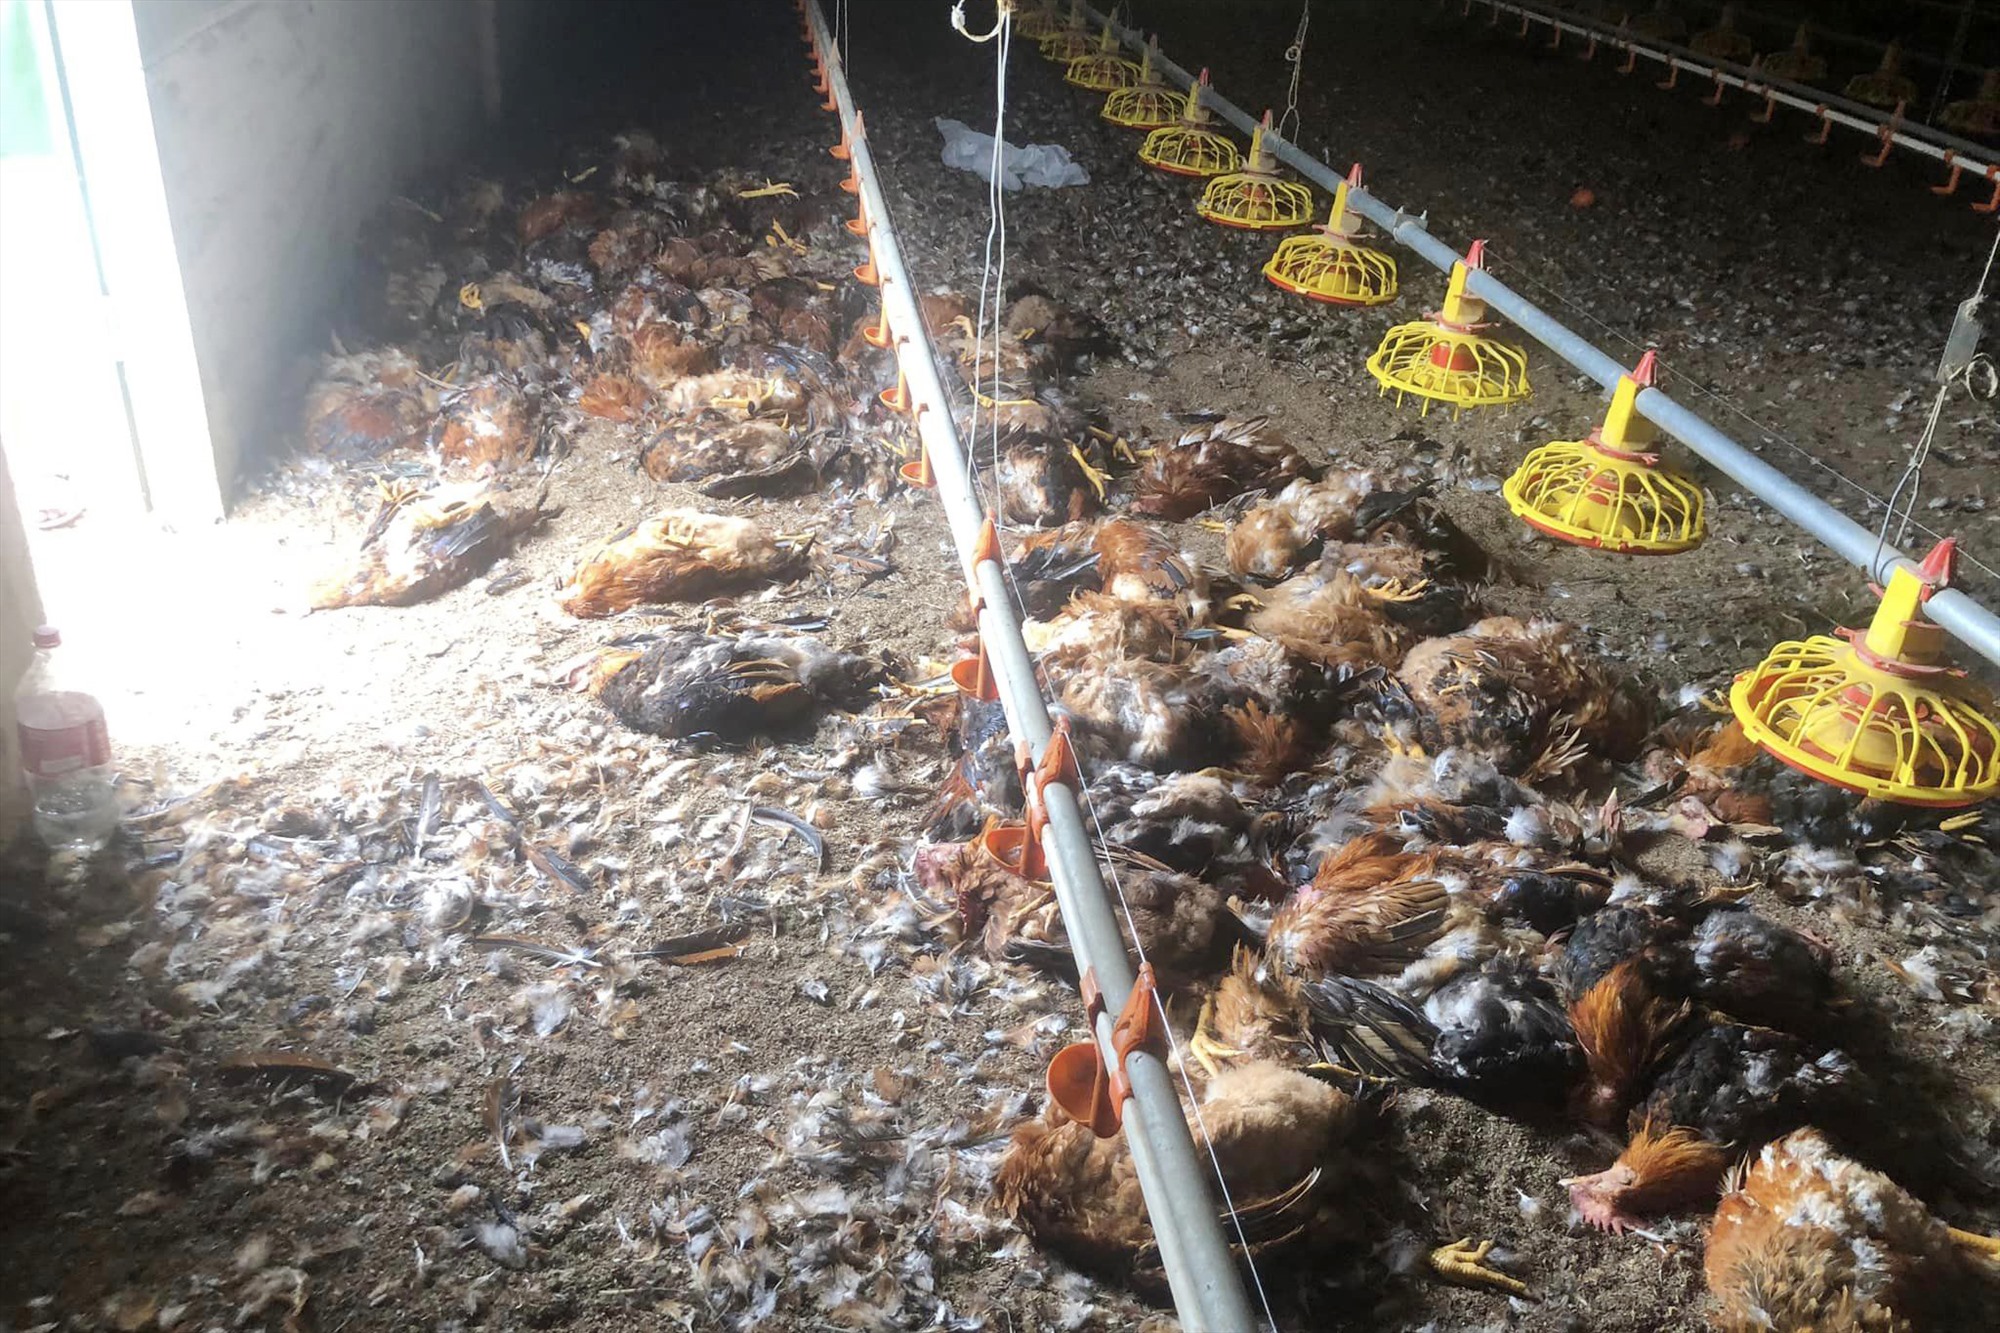 10.000 con gà bị chết ngạt do chập điện, gia chủ thiệt hại hơn 1,3 tỉ đồng